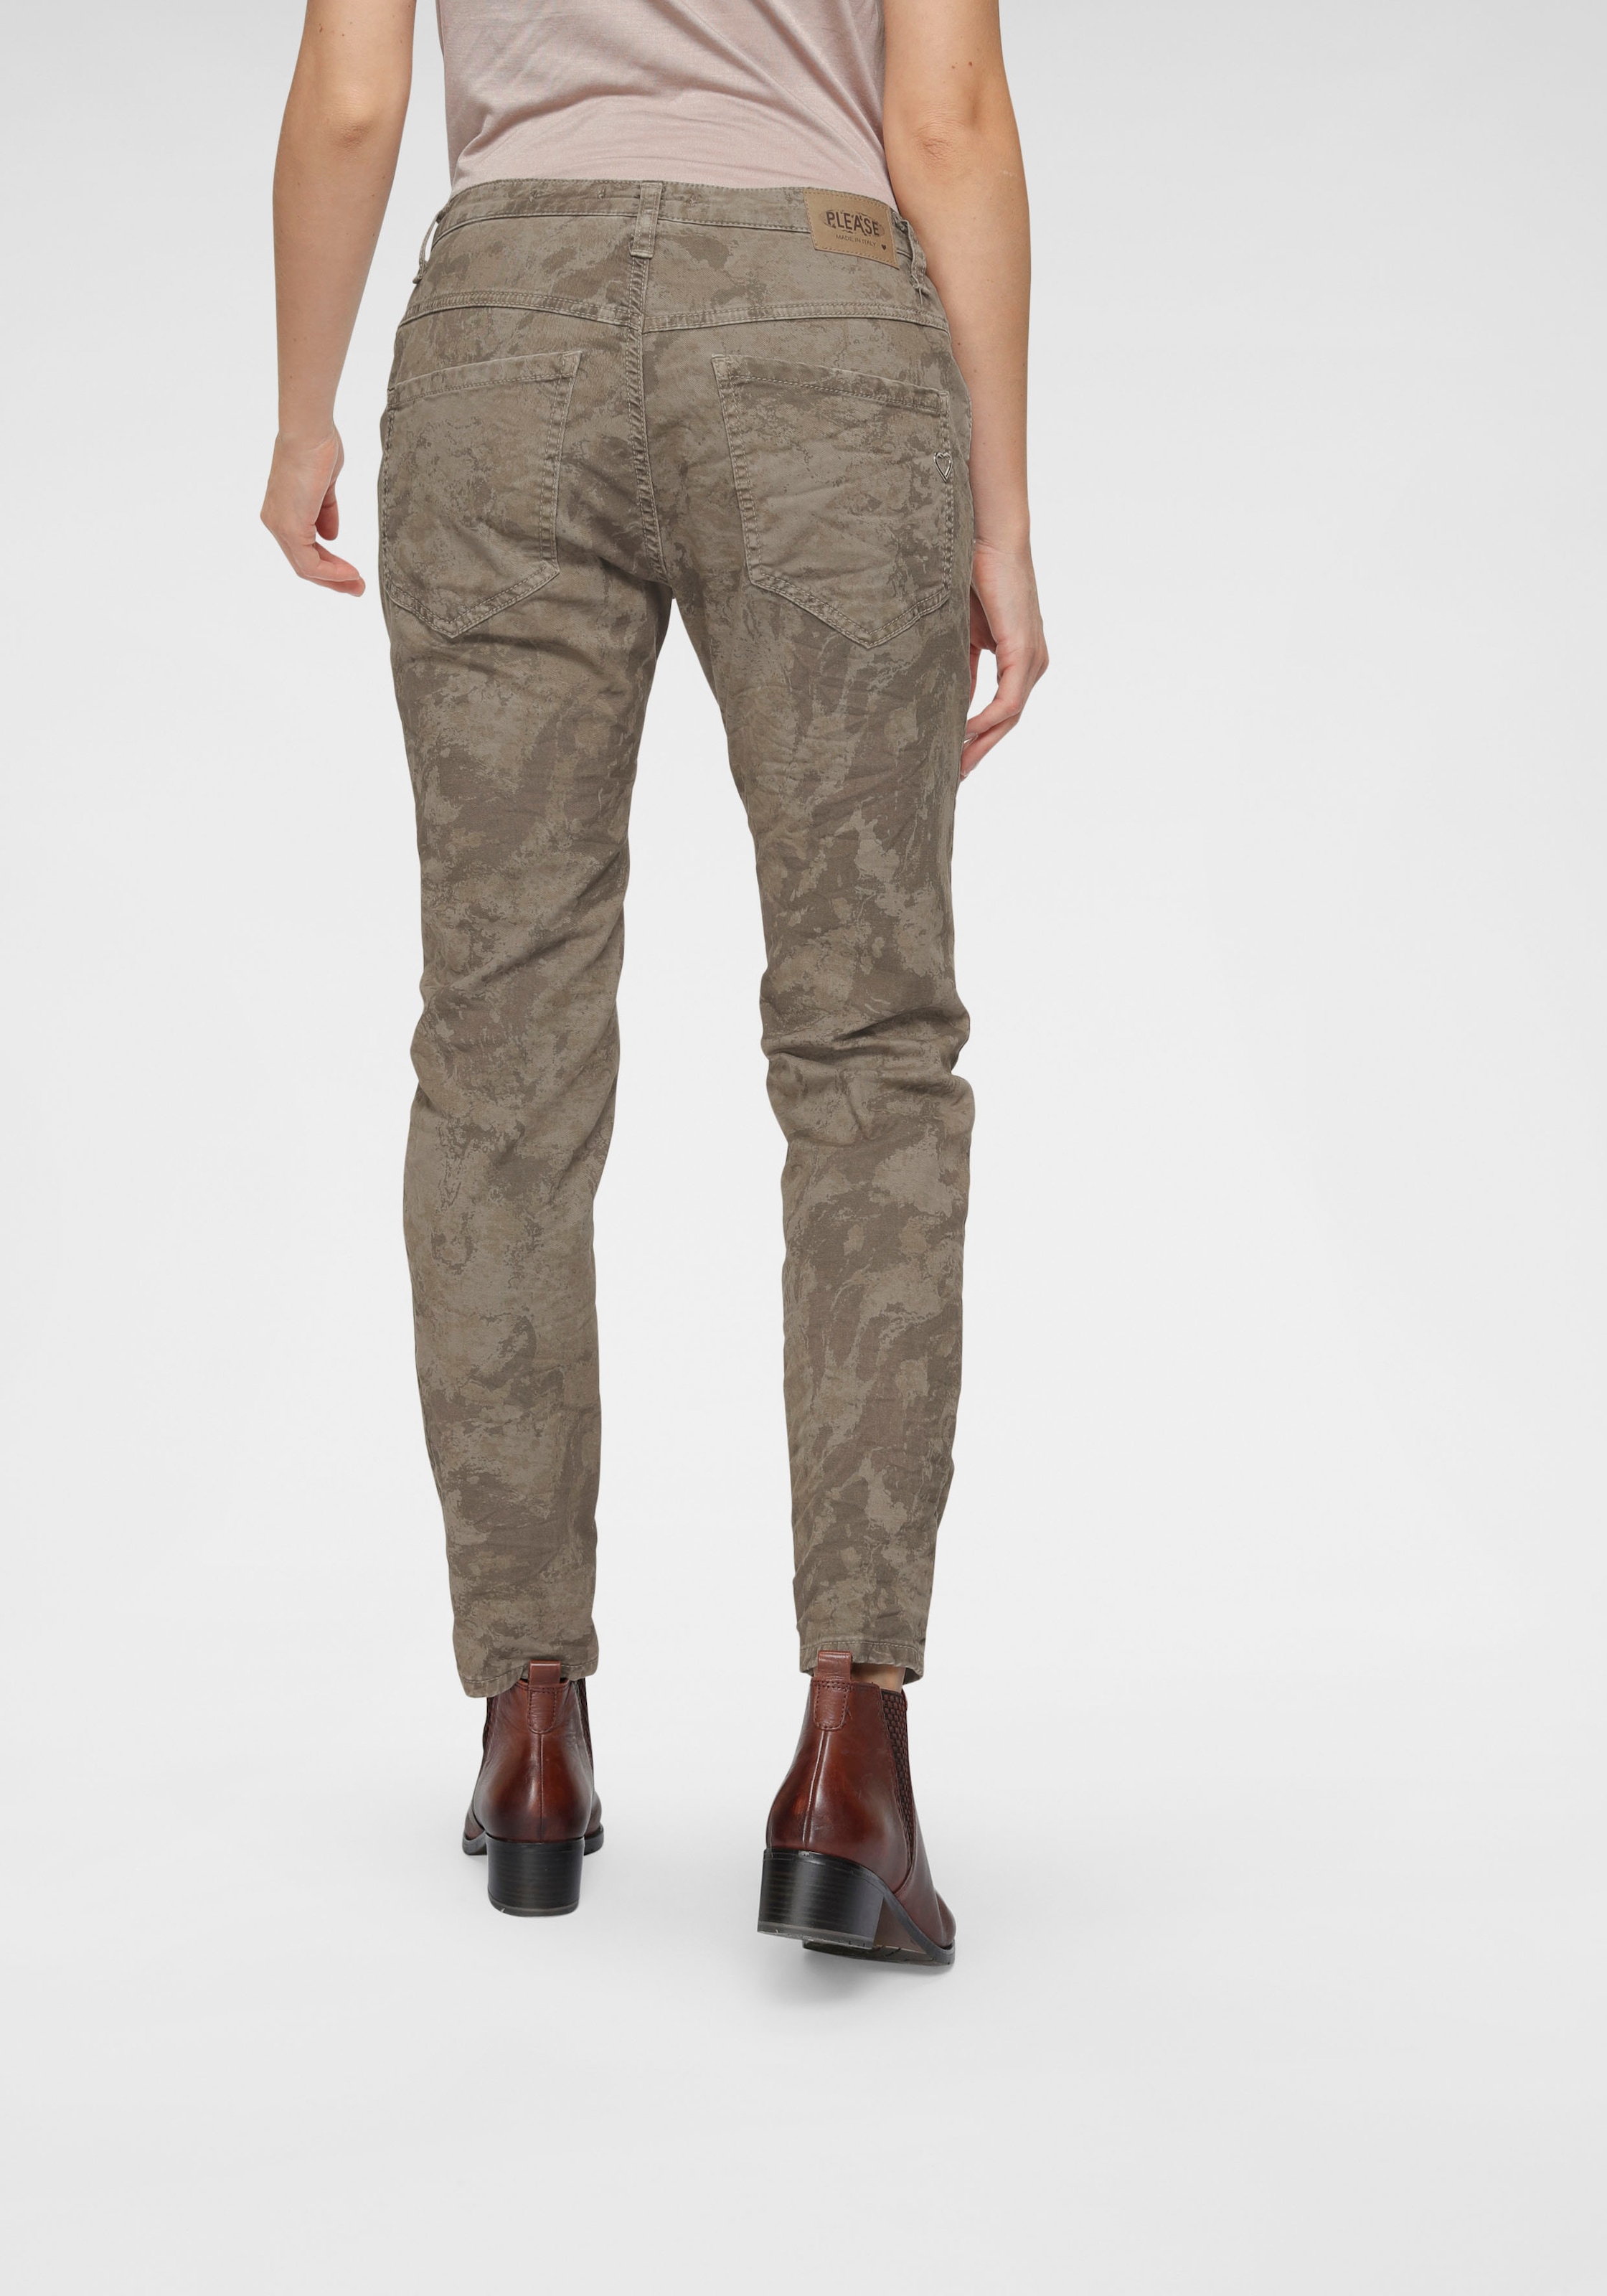 [Qualitätsgarantie und kostenloser Versand vorausgesetzt] Please Jeans Röhrenhose »P78«, im Military günstig kaufen Style